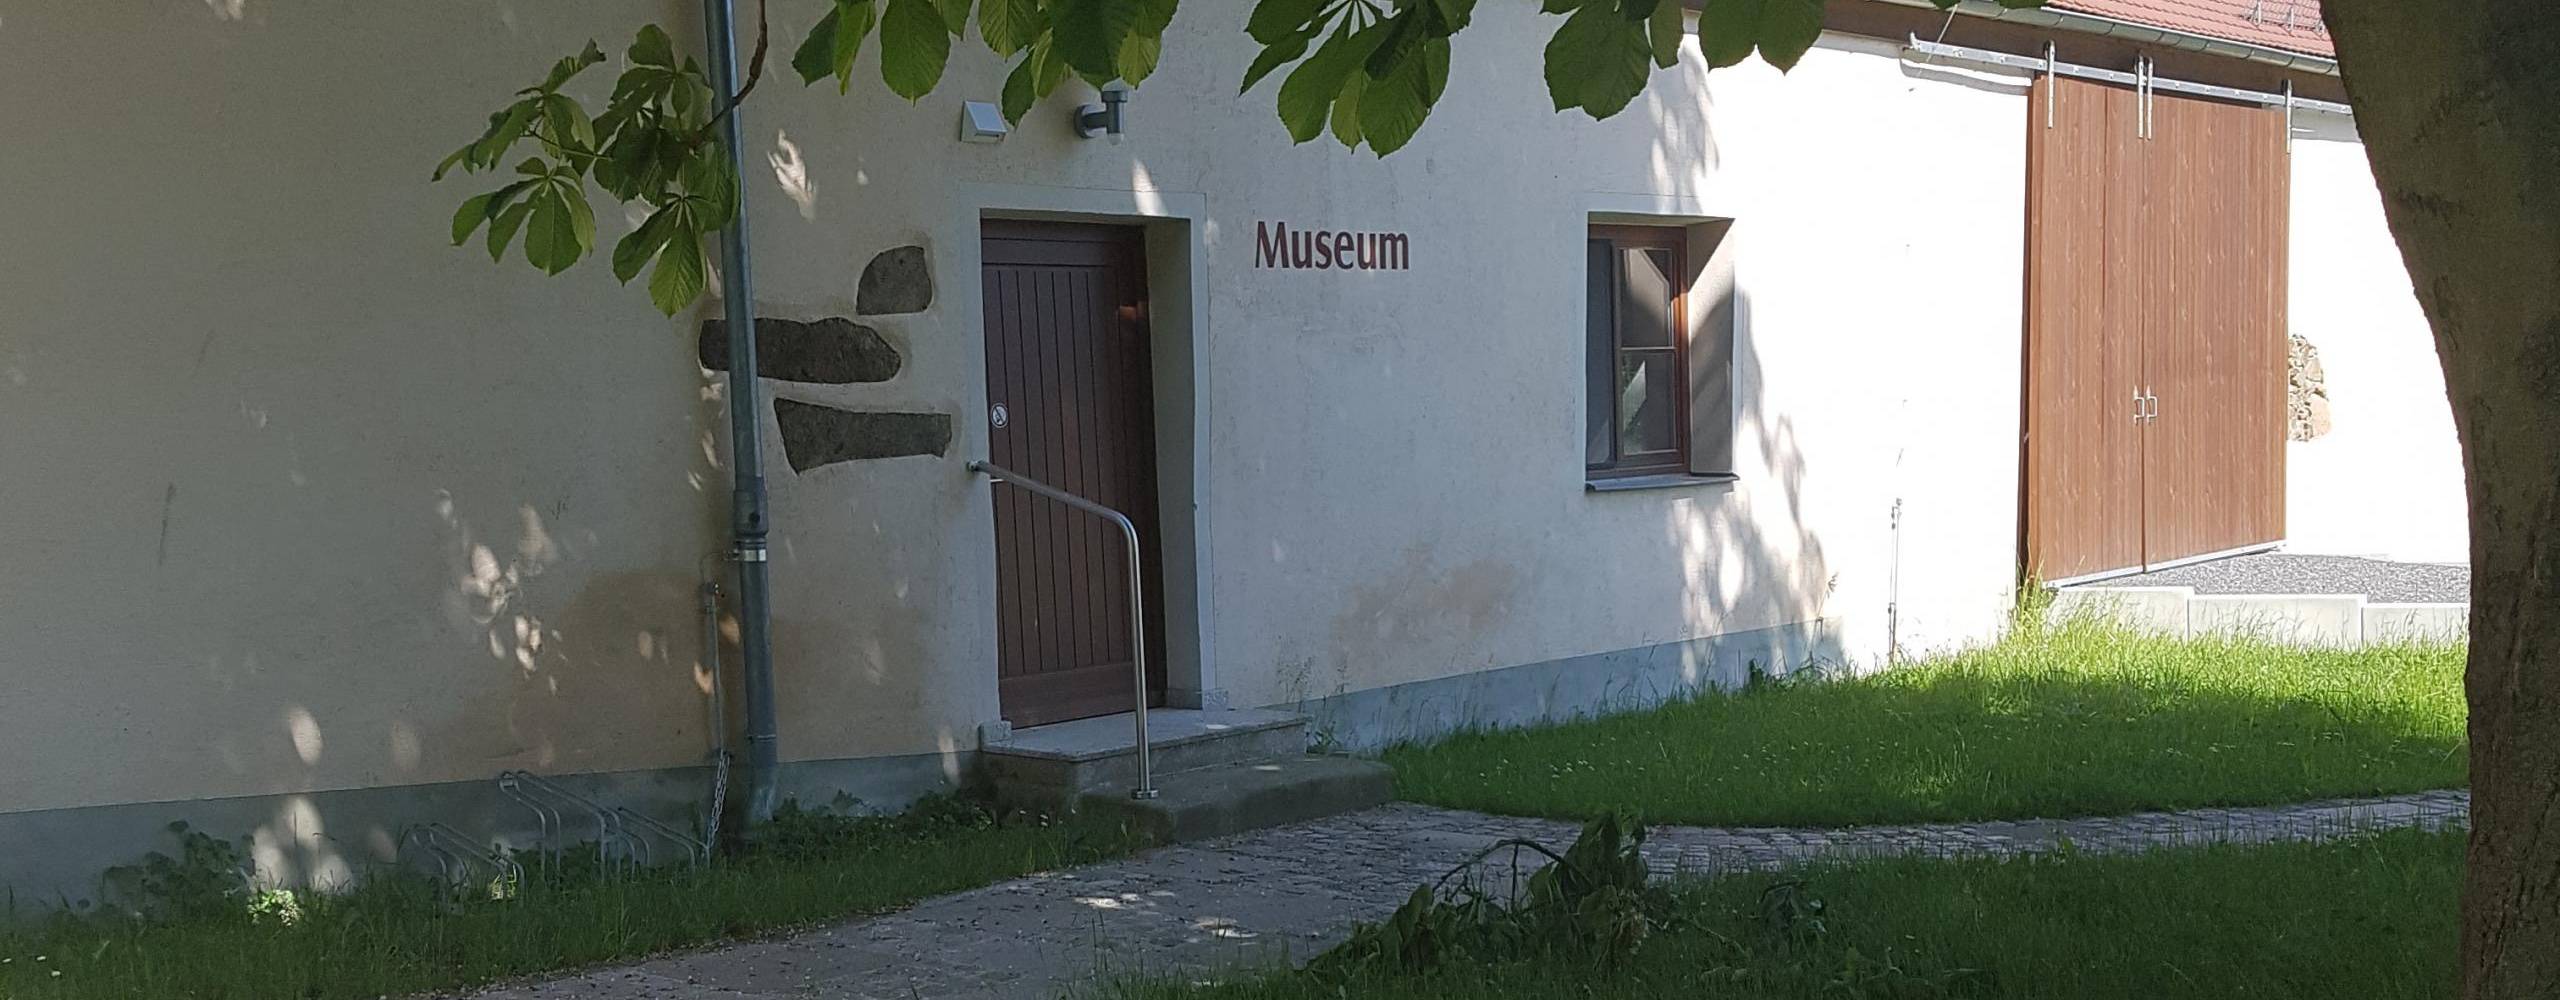 museum neukirch lausitz fotograf gemeindeverwaltung neukirch lausitz